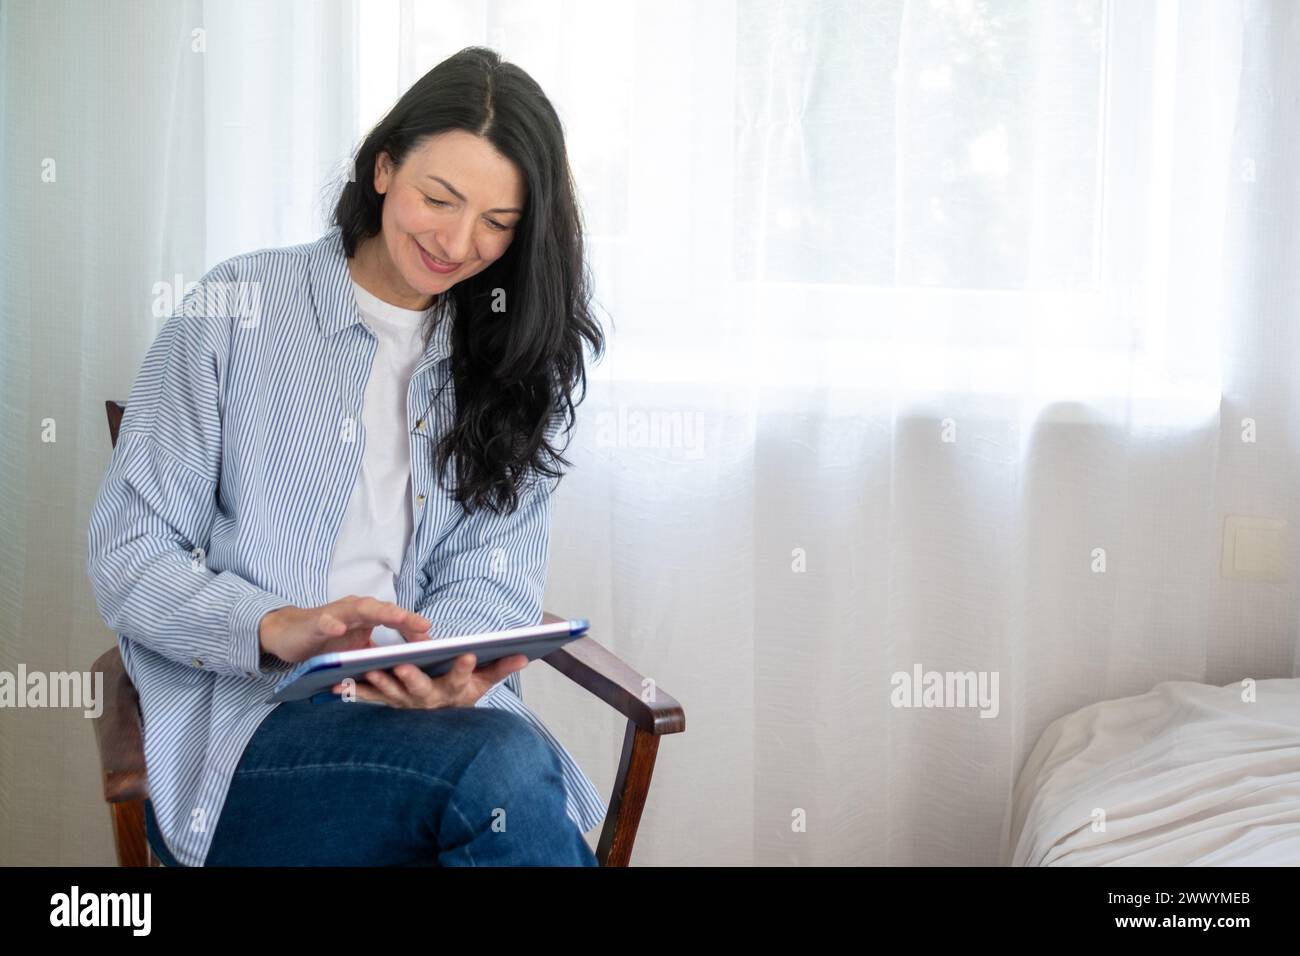 Contenuti donna di mezza età vestita in modo informale, inserita in un tablet digitale, che incarna connettività moderna e apprendimento permanente. Foto di alta qualità Foto Stock